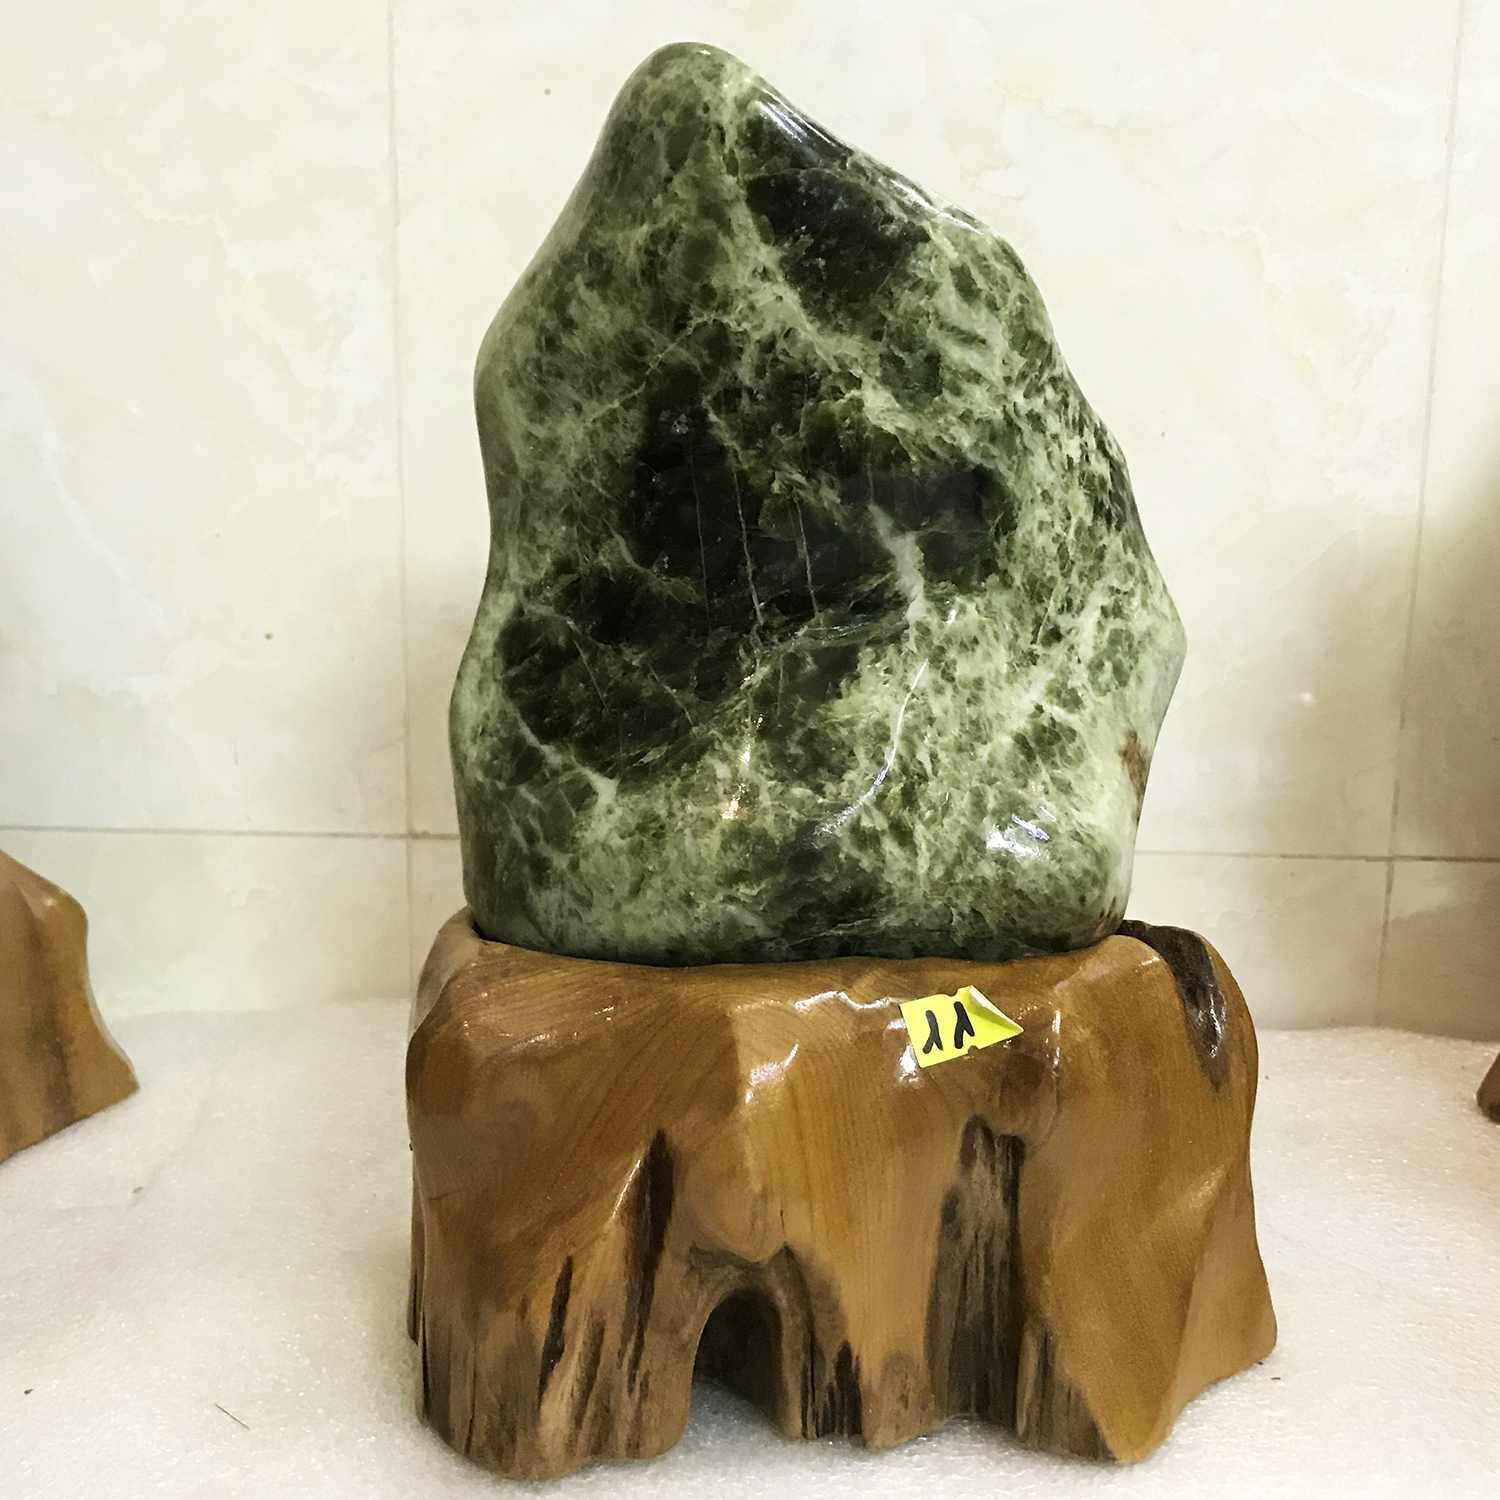 Cây đá để bàn ngọc tự nhiên màu xanh lá bóng cho người mệnh Hỏa và Mộc nặng 4 kg cao 28 cm damenhhoa